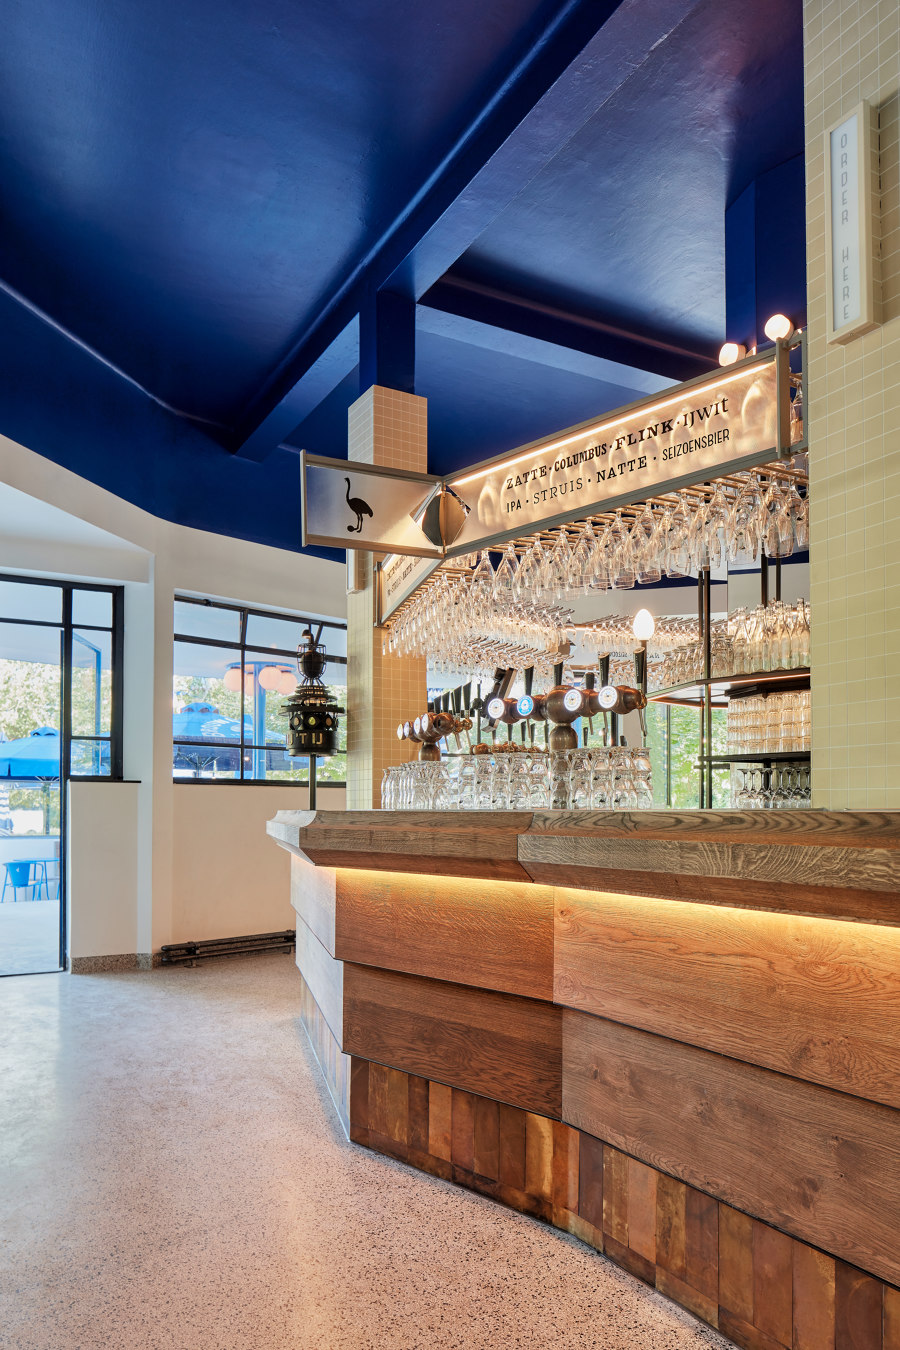 Blauwe Theehuis by Studio Modijefsky | Restaurant interiors